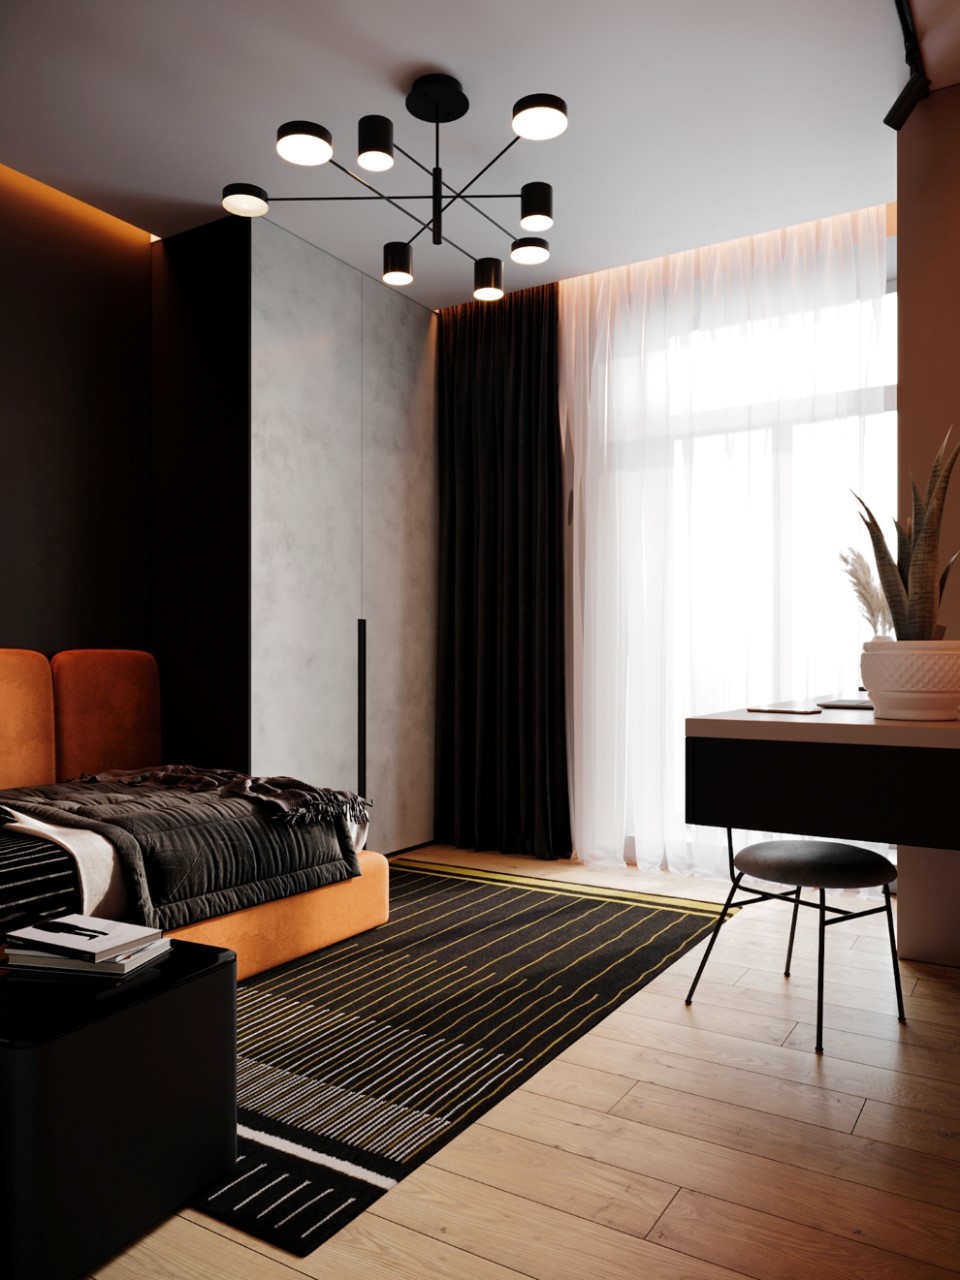 Phối nội thất màu đen cùng màu cam cho phòng ngủ cá tính